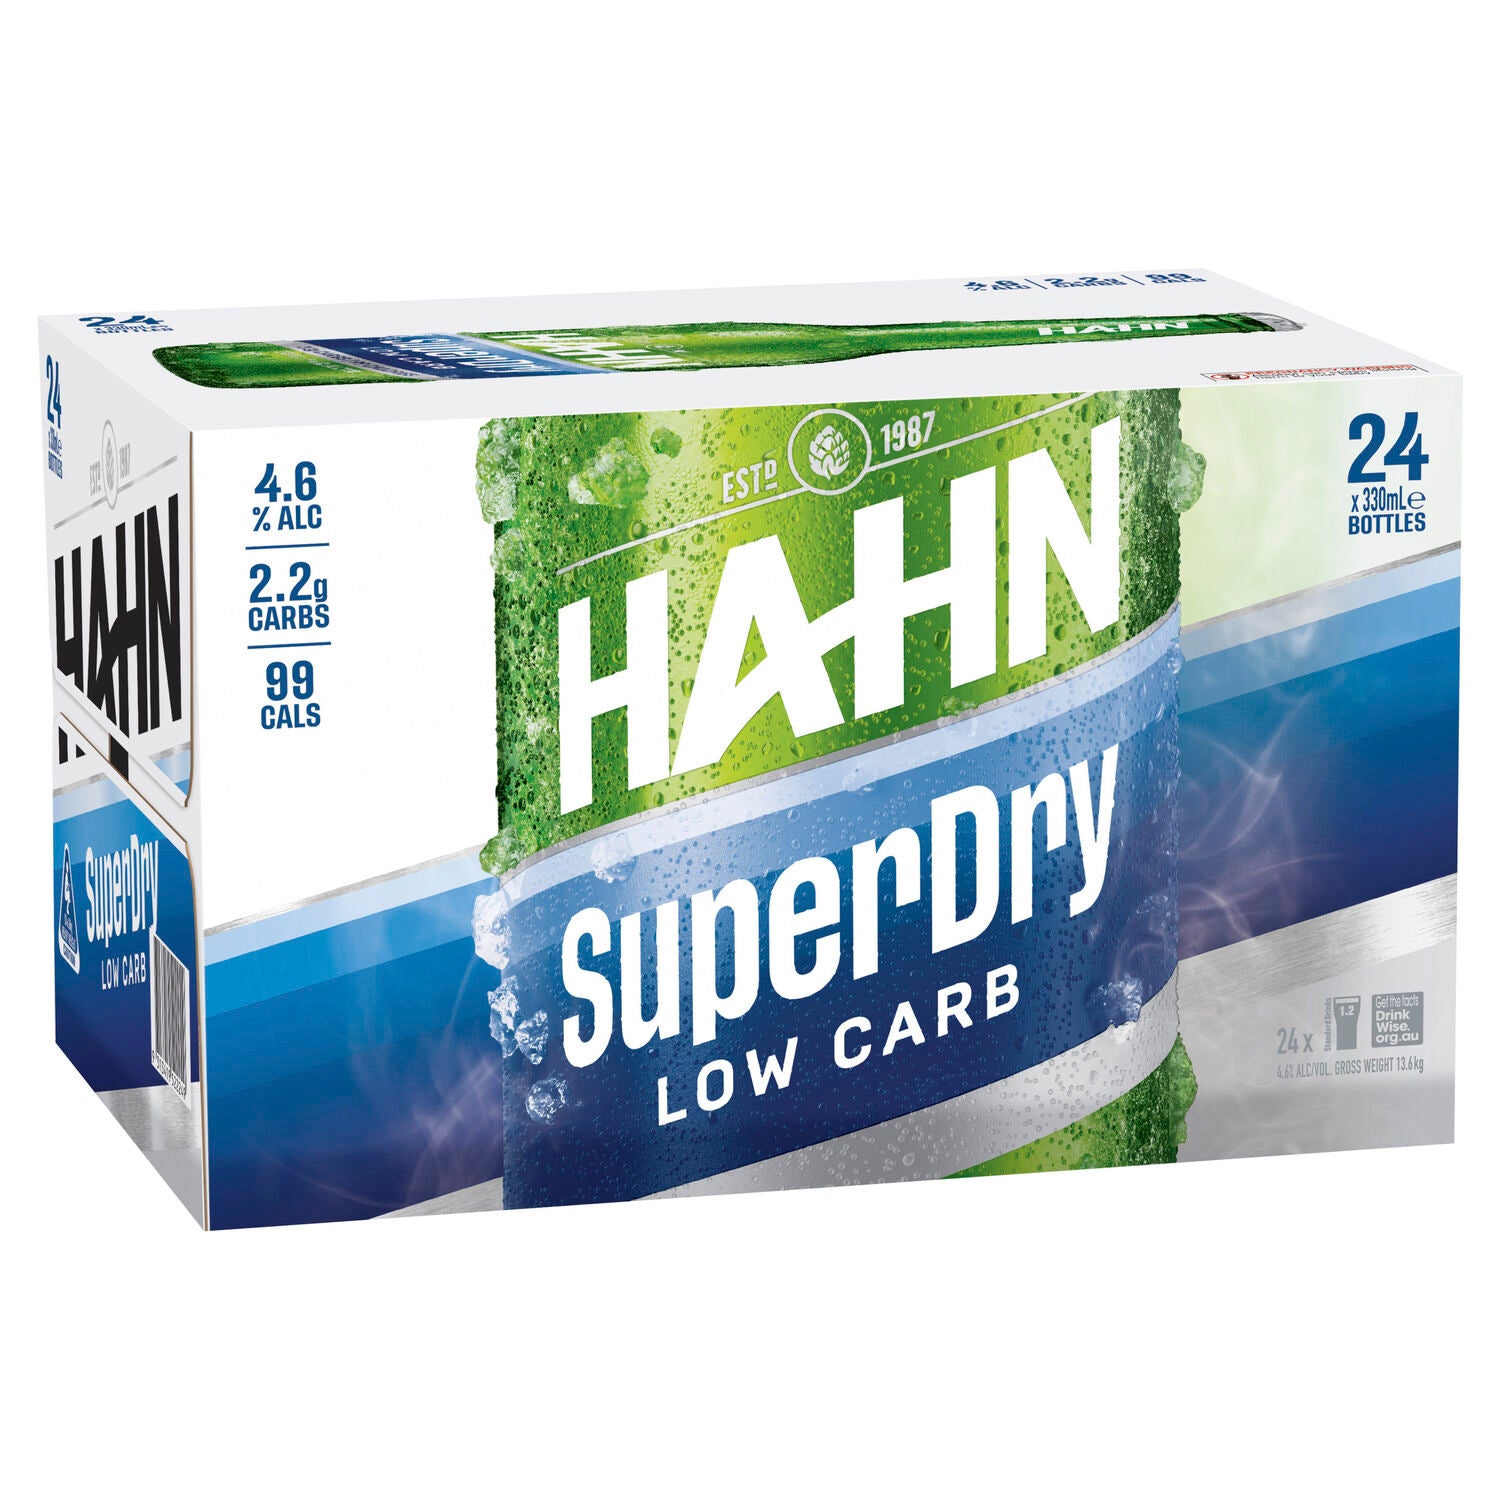 Hahn Super Dry Bottles 330ml